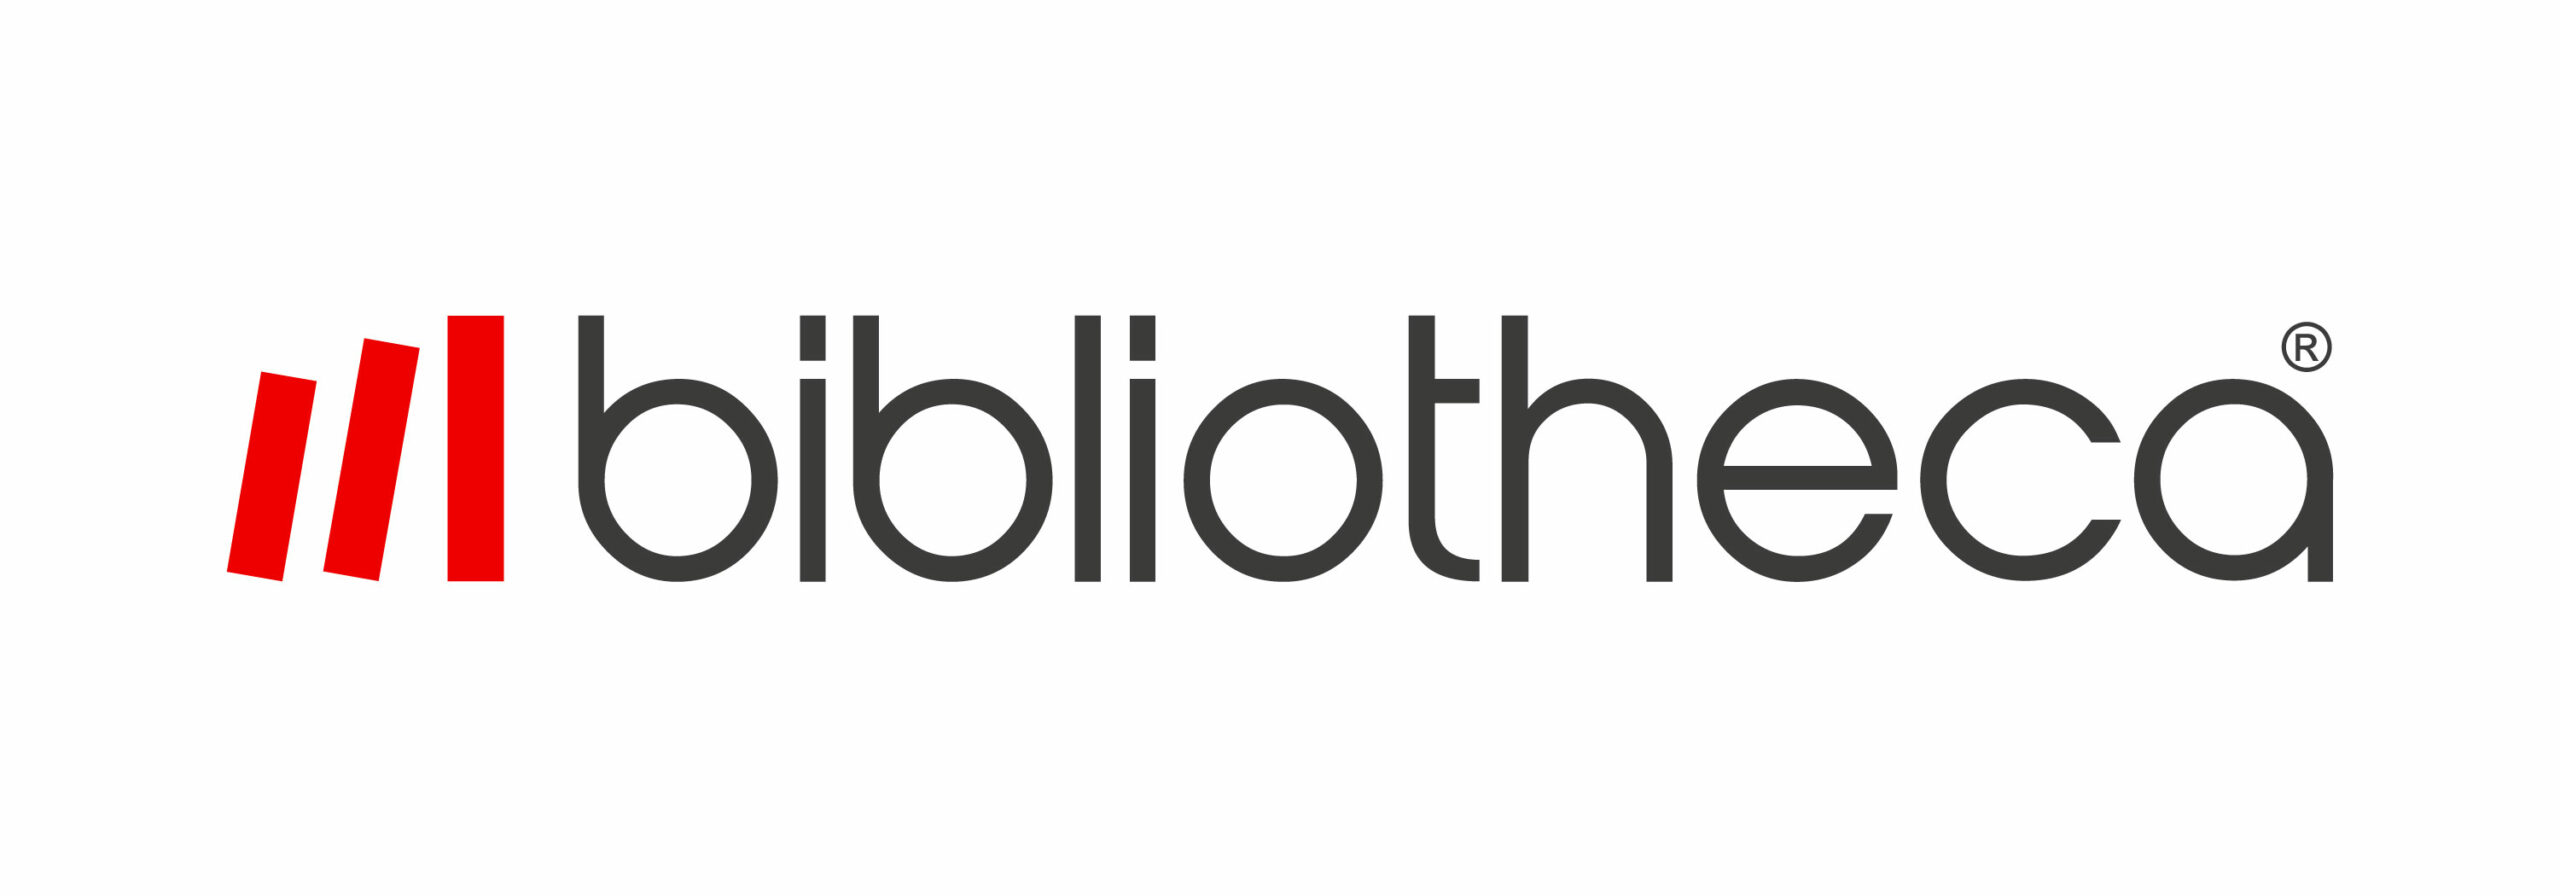 Bibliotheca_logo_color_3000px